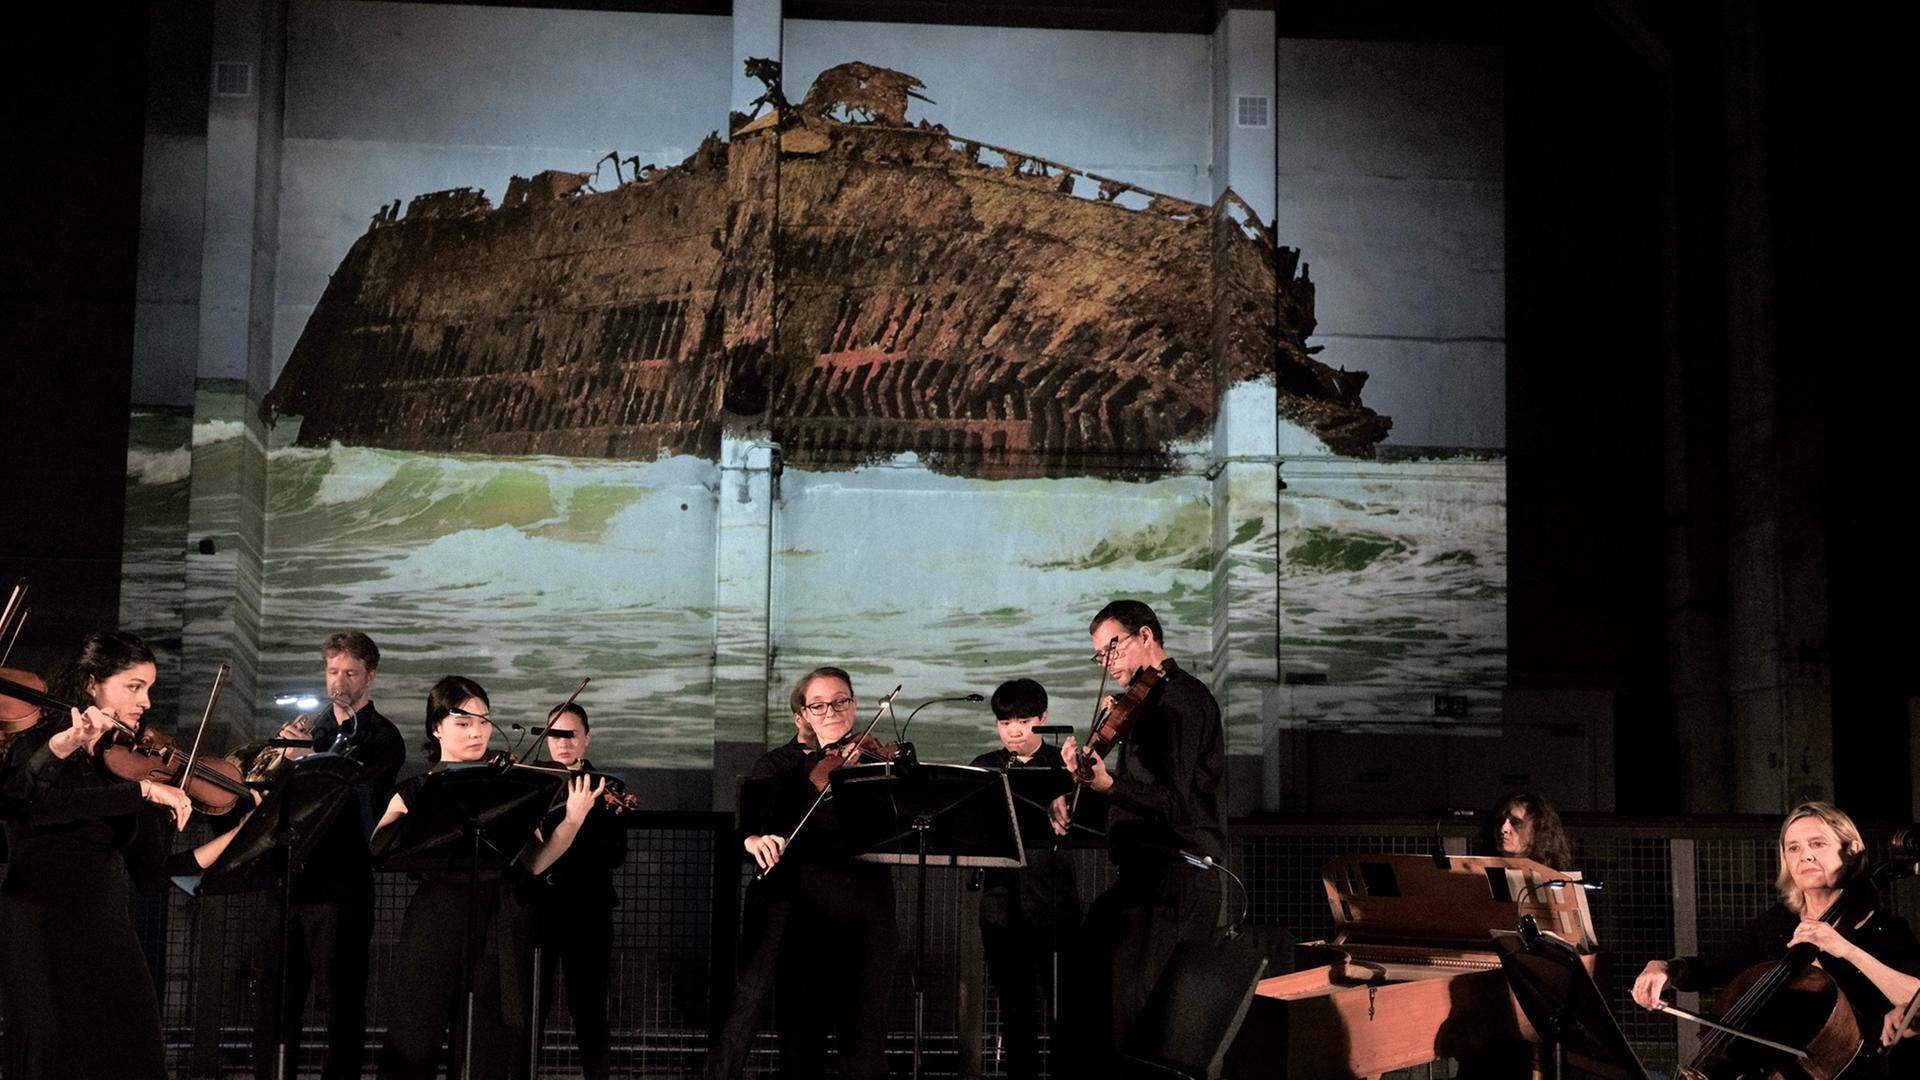 Ein Musikensemble mit Streichern, einer Cembalistin, einem Hornisten und einem Oboisten spielt in schwarzer Konzertkleidung auf einer Bühne. Im Hintergrund wird ein Foto an die Wand projiziert, das ein auf Grund gelaufenes, zur Seite geneigtes Schiffswrack zeigt.